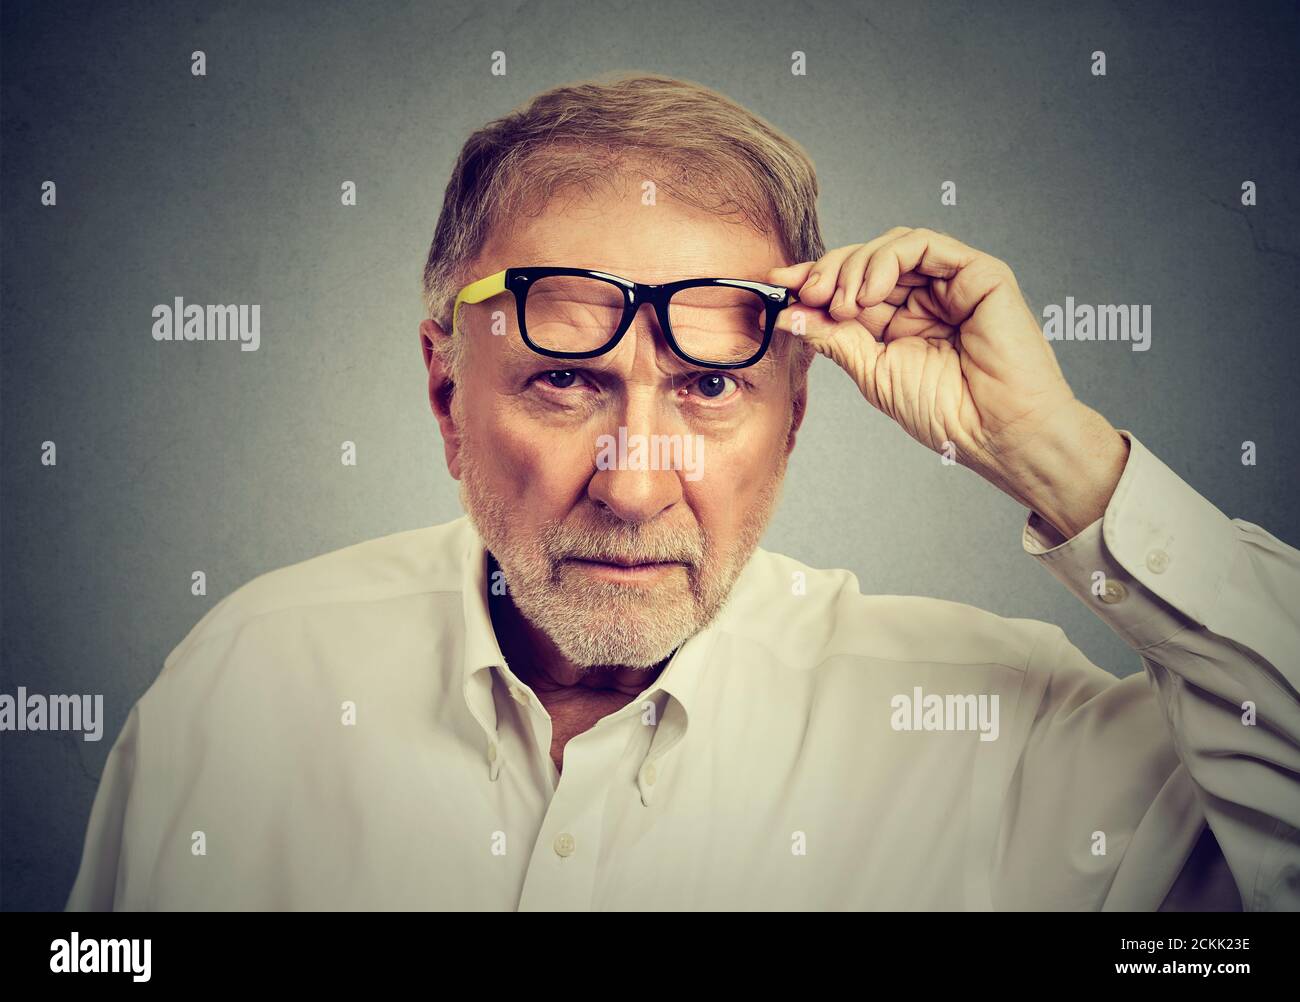 Hombre anciano escéptico con gafas que te miran aislado sobre fondo gris. Emociones humanas, lenguaje corporal Foto de stock